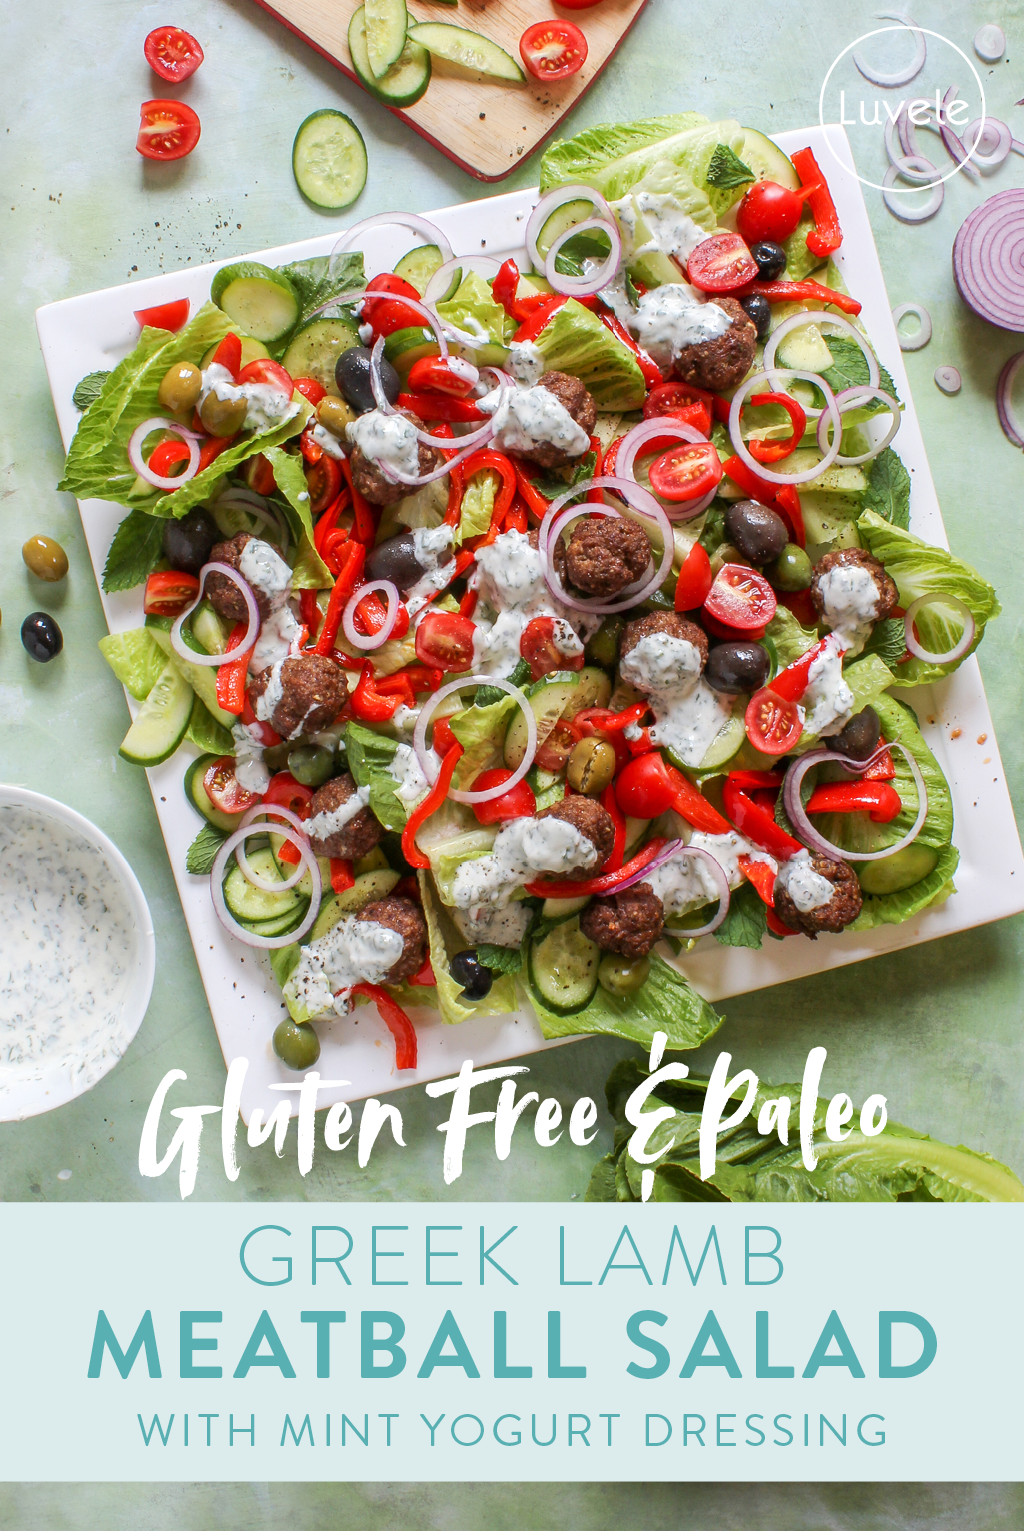 Greek lamb meatball salad with mint yogurt dressing